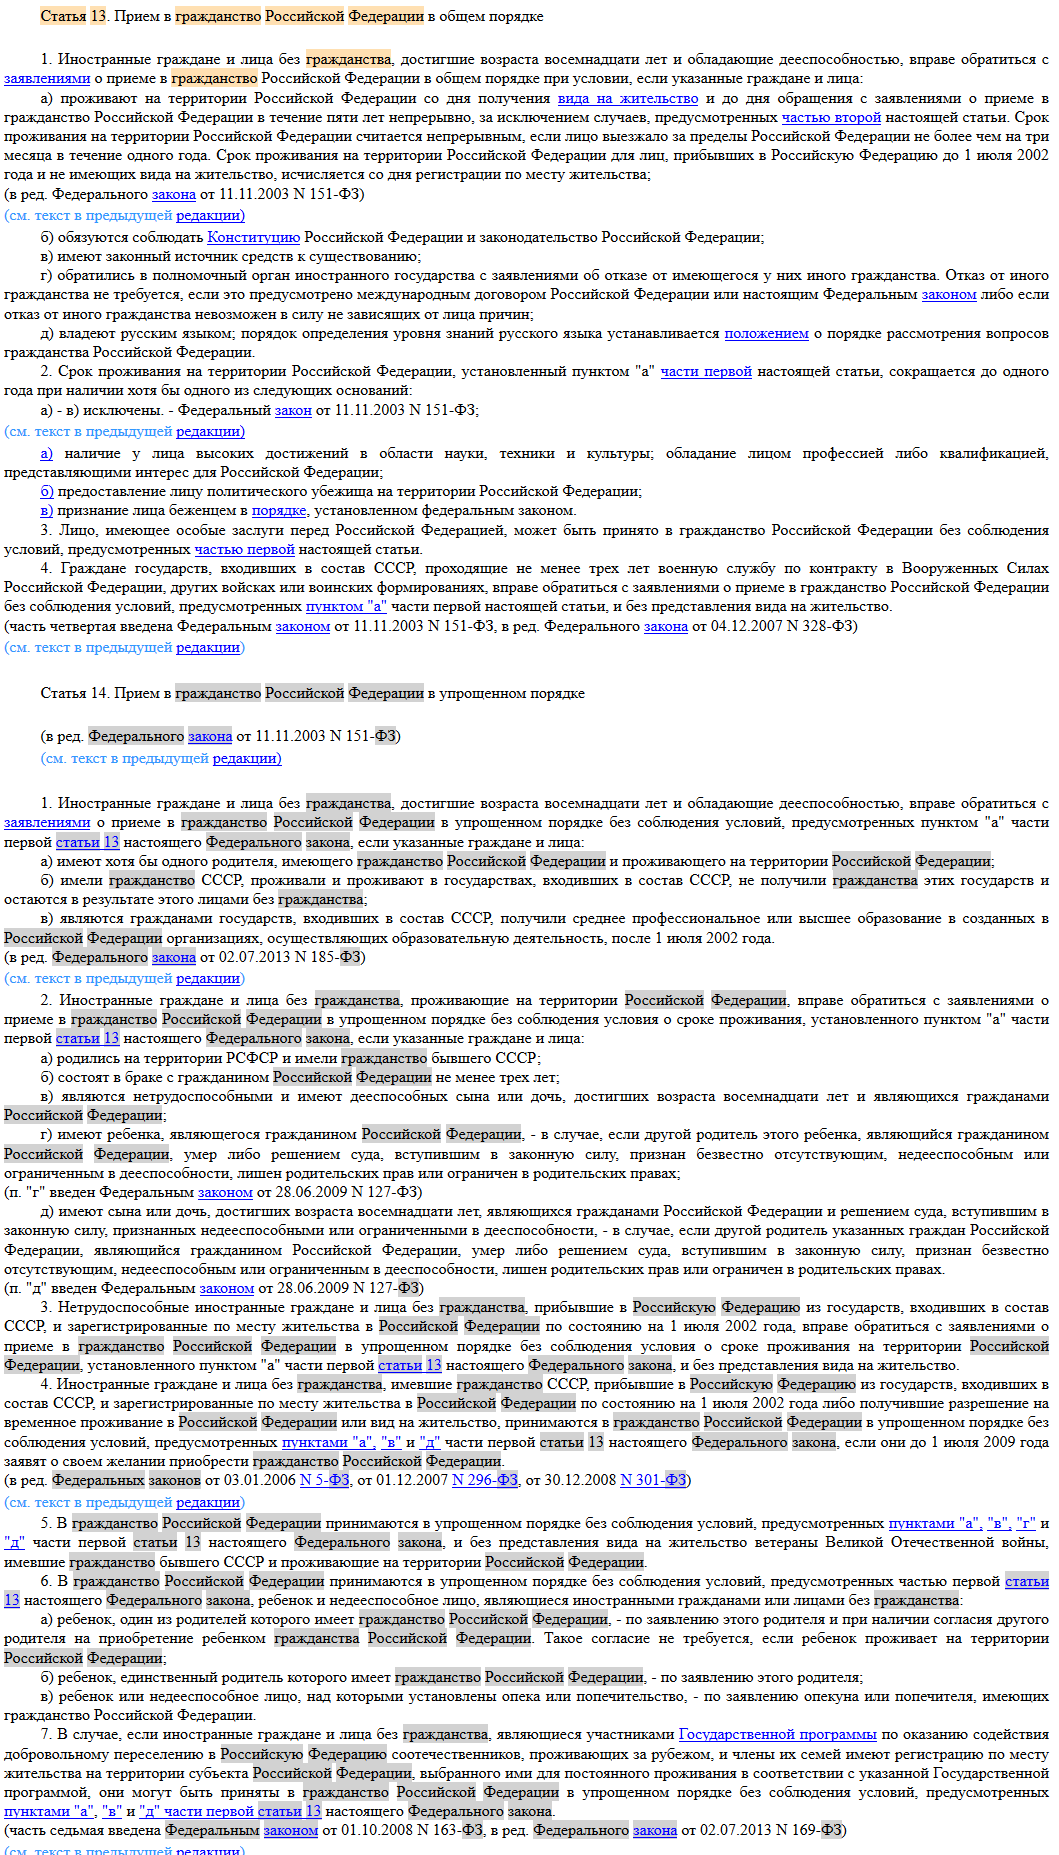 ст_ 13 и 14 Закона РФ «О гражданстве в РФ»